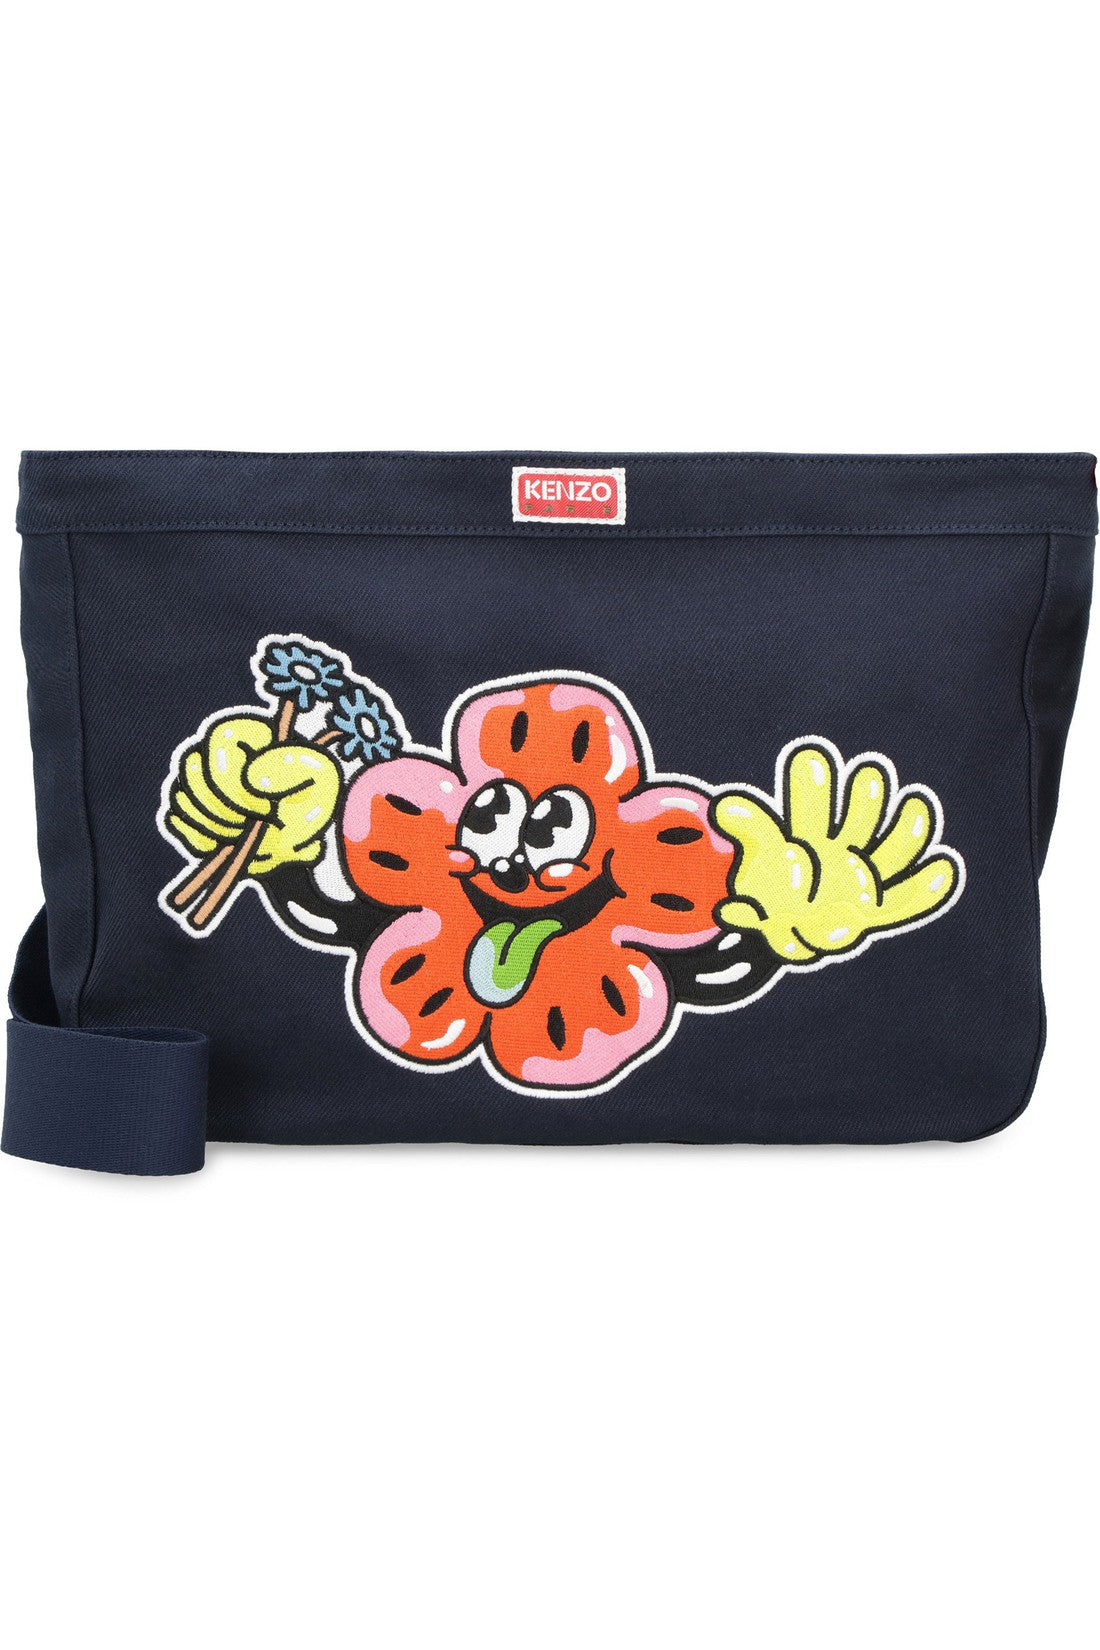 Kenzo-OUTLET-SALE-Embroidered shoulder bag-ARCHIVIST